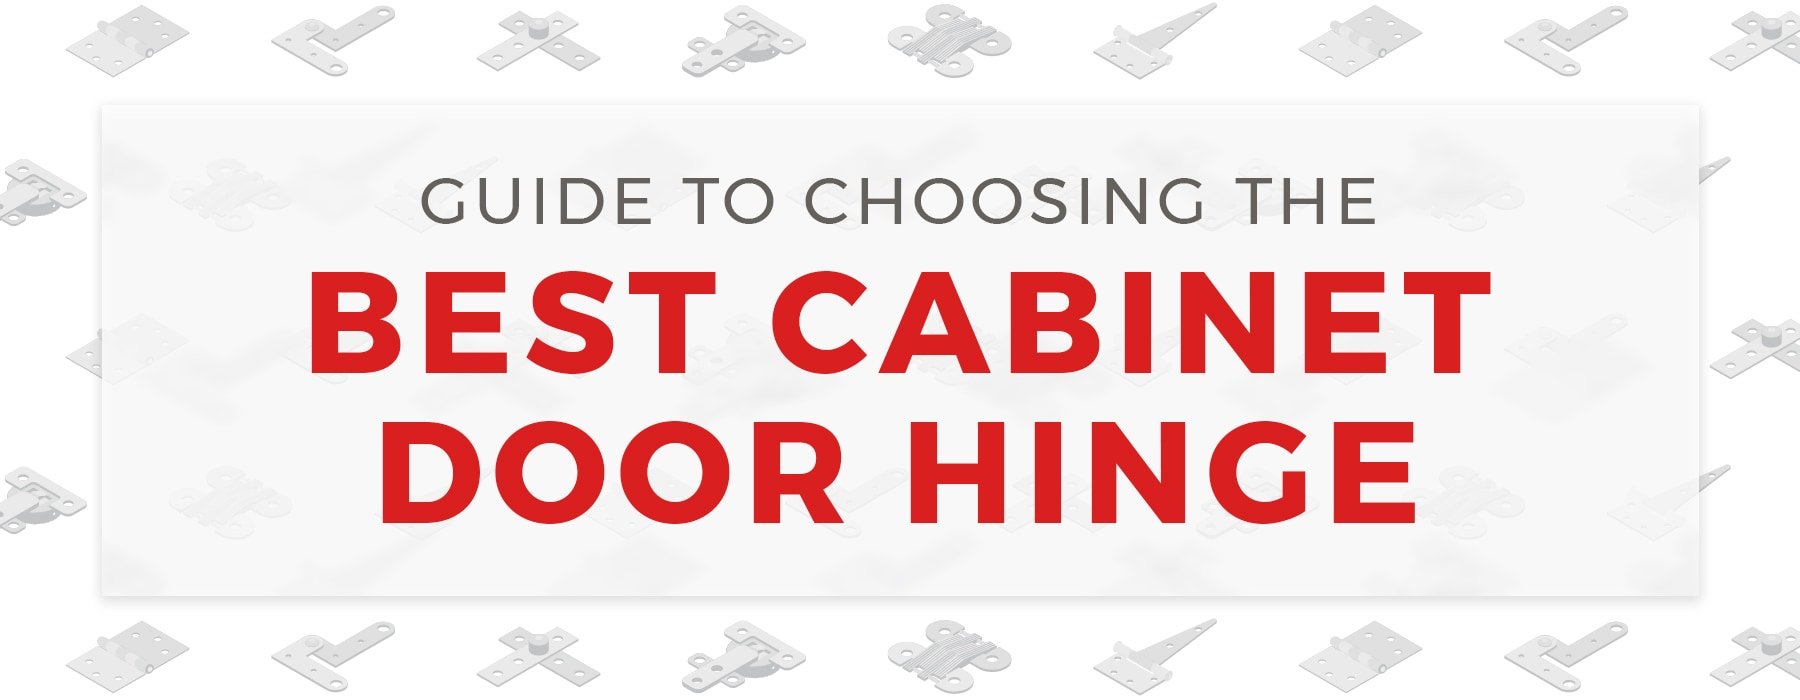 Guide To Choosing The Best Cabinet Door Hinge